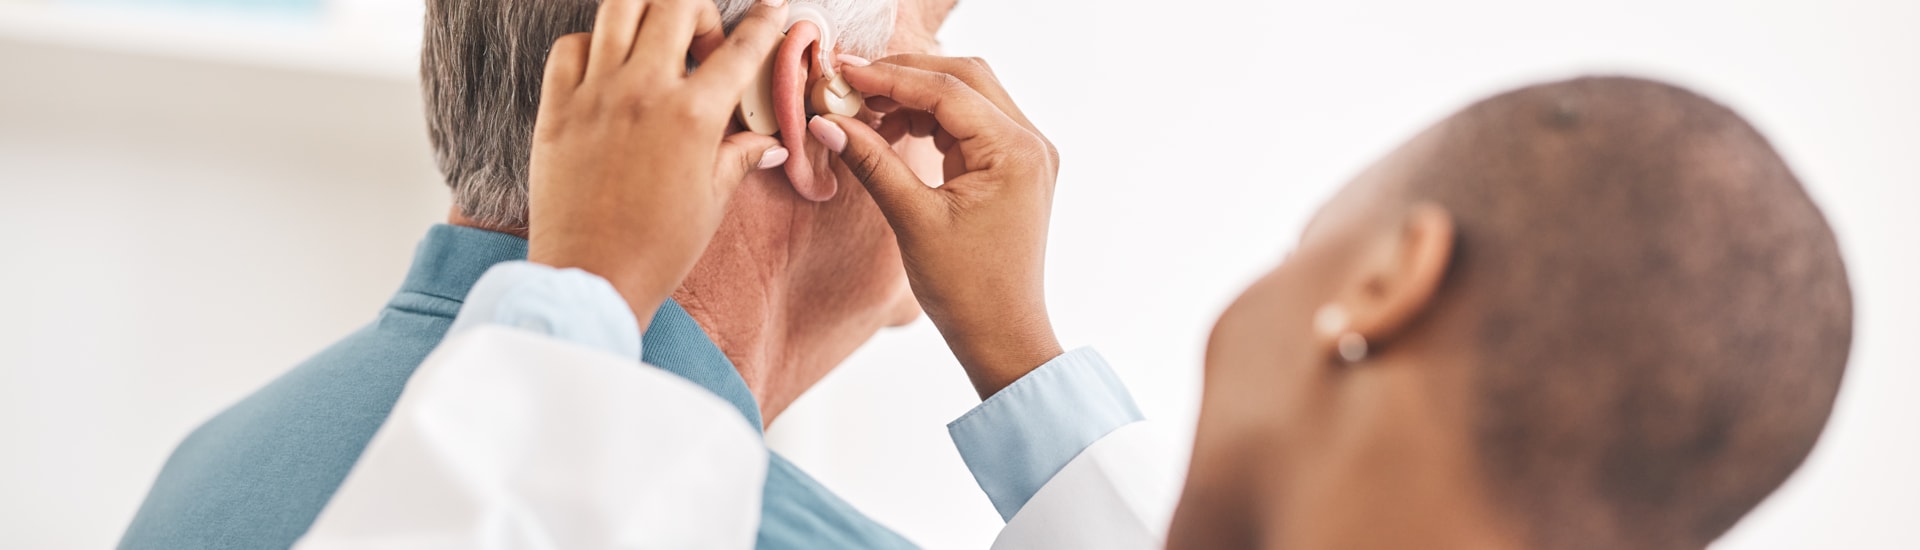 Hörgeräte verringern das Demenzrisiko